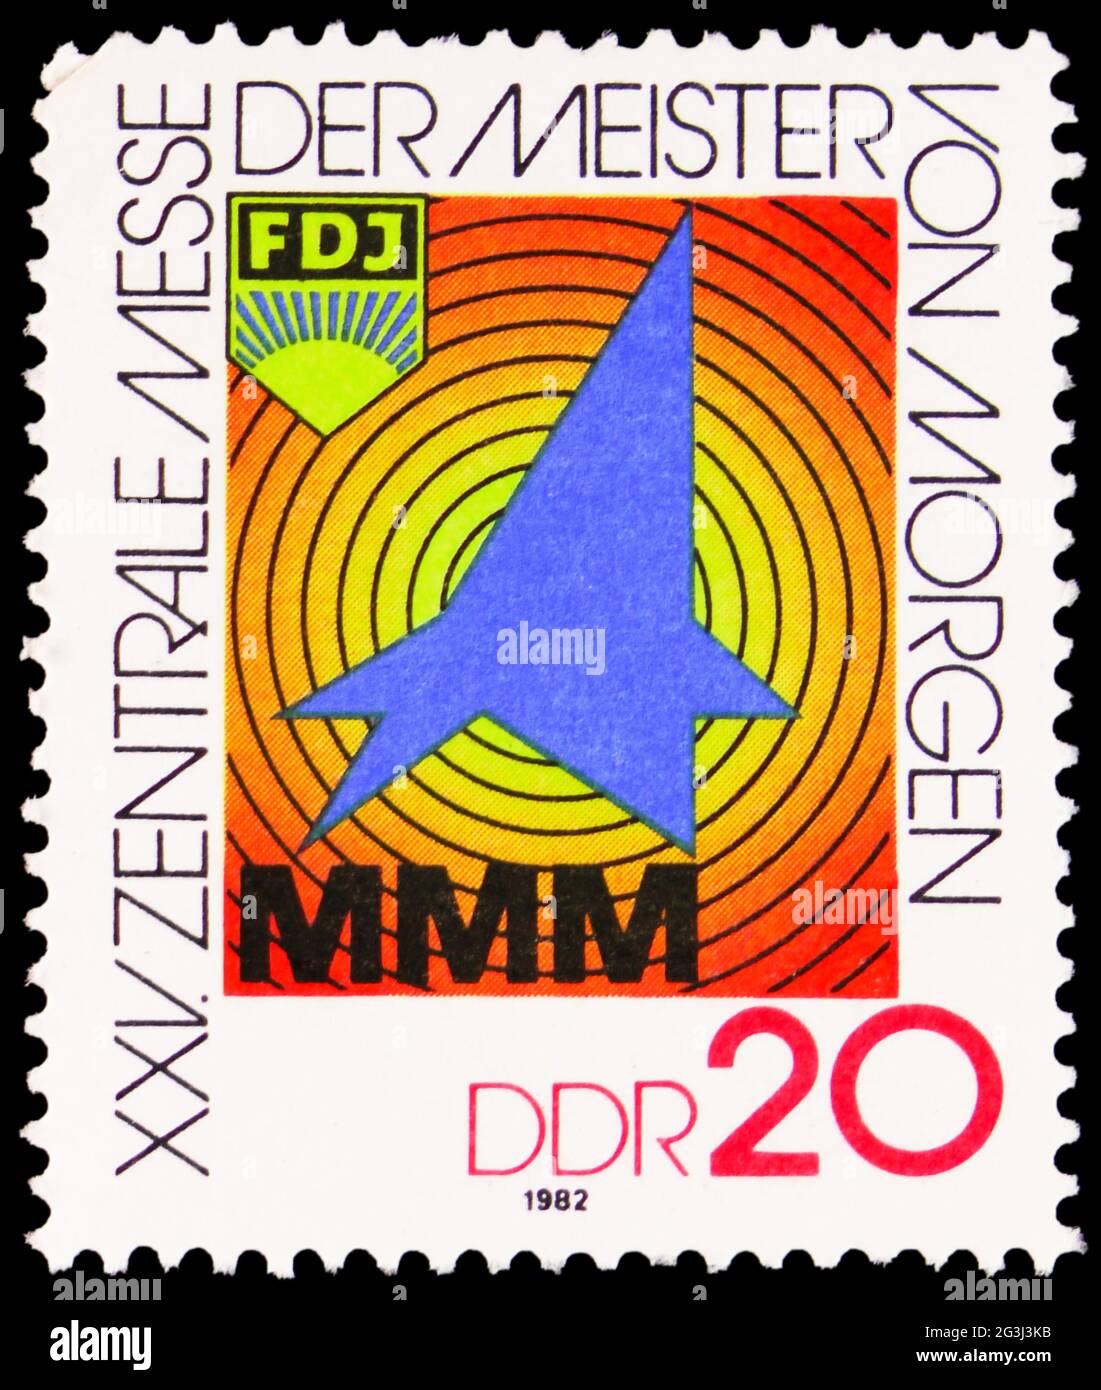 MOSKAU, RUSSLAND - 15. APRIL 2021: Die in Deutschland gedruckte Briefmarke zeigt das Ausstellungs-Emblem, die Messe der Meister von morgen, um 1982 Stockfoto